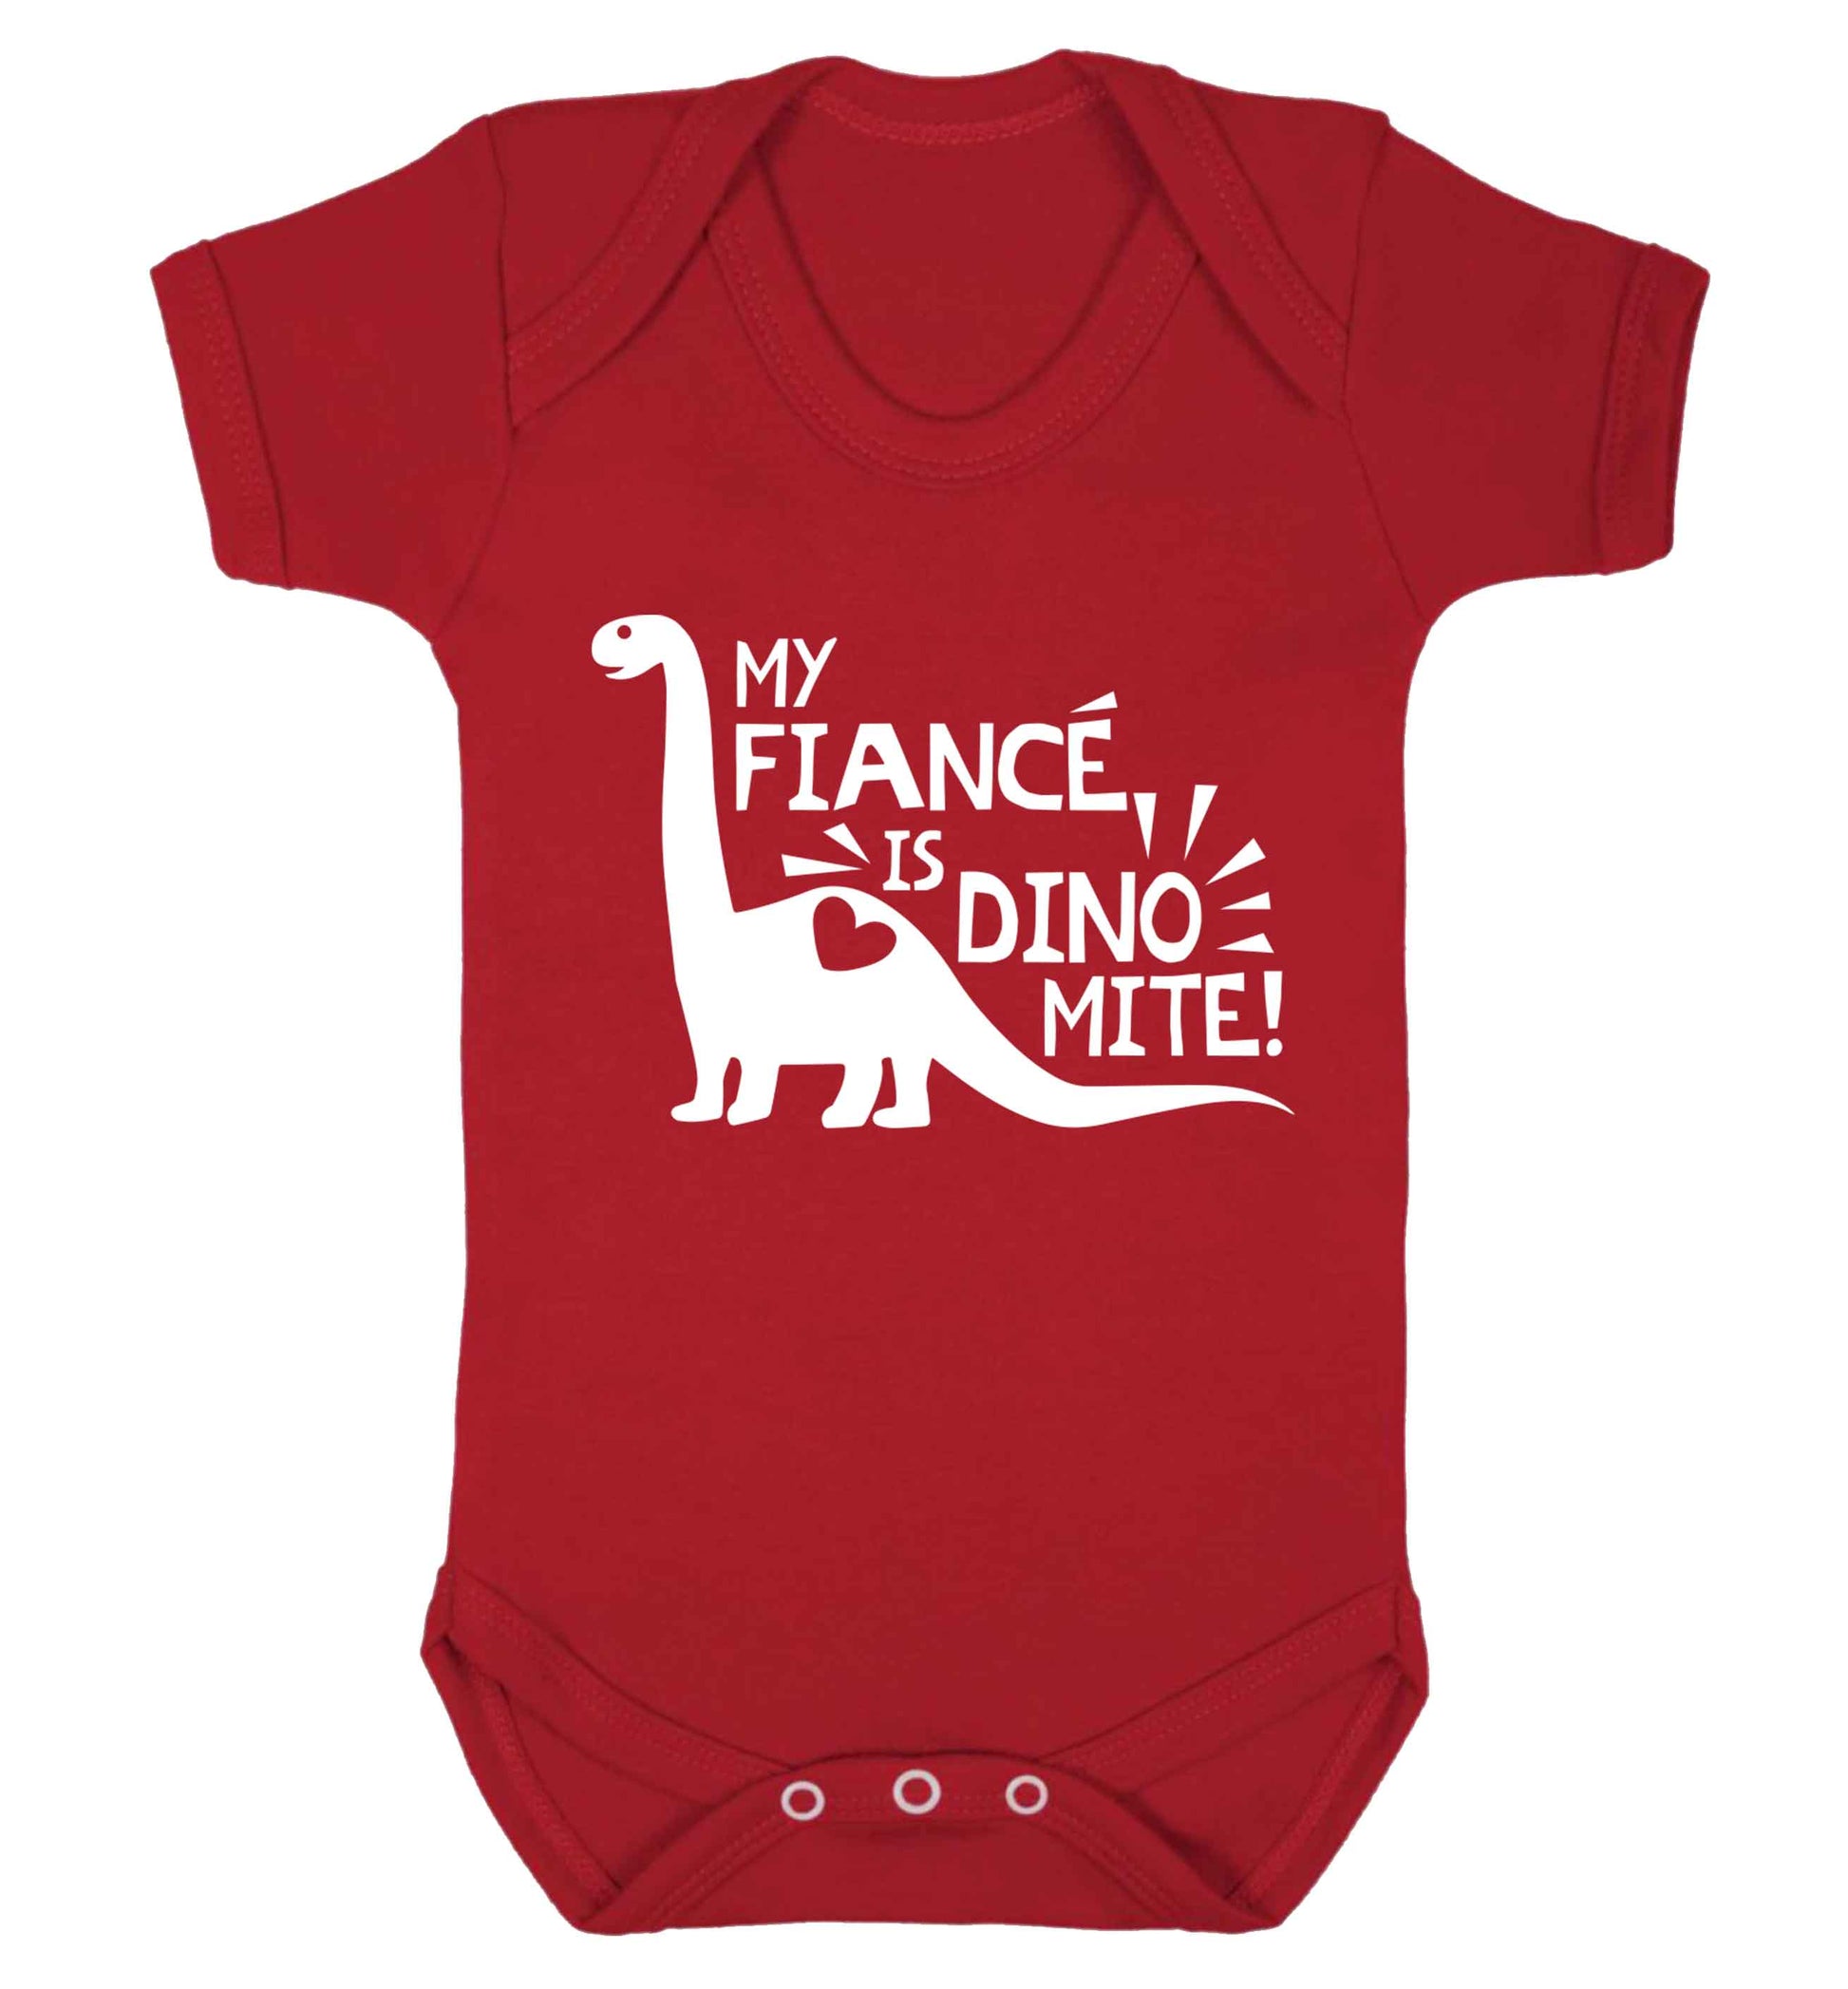 My fiance is dinomite! Baby Vest red 18-24 months